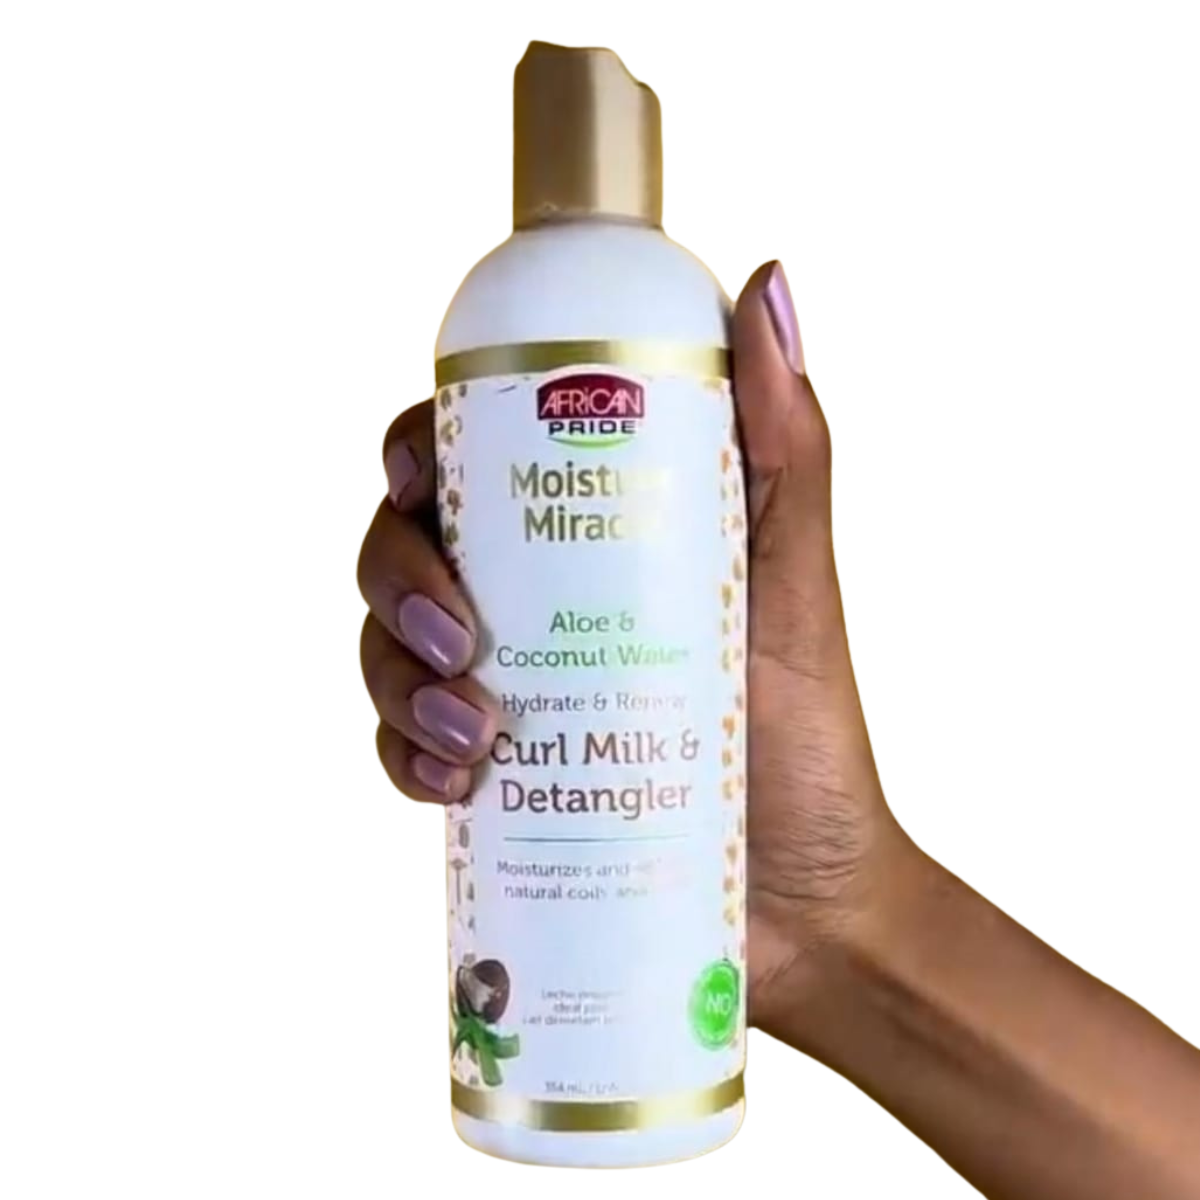 desenredante african pride leche hidratante aloe moisture miracle comprar en onlineshoppingcenterg Colombia centro de compras en linea osc 3